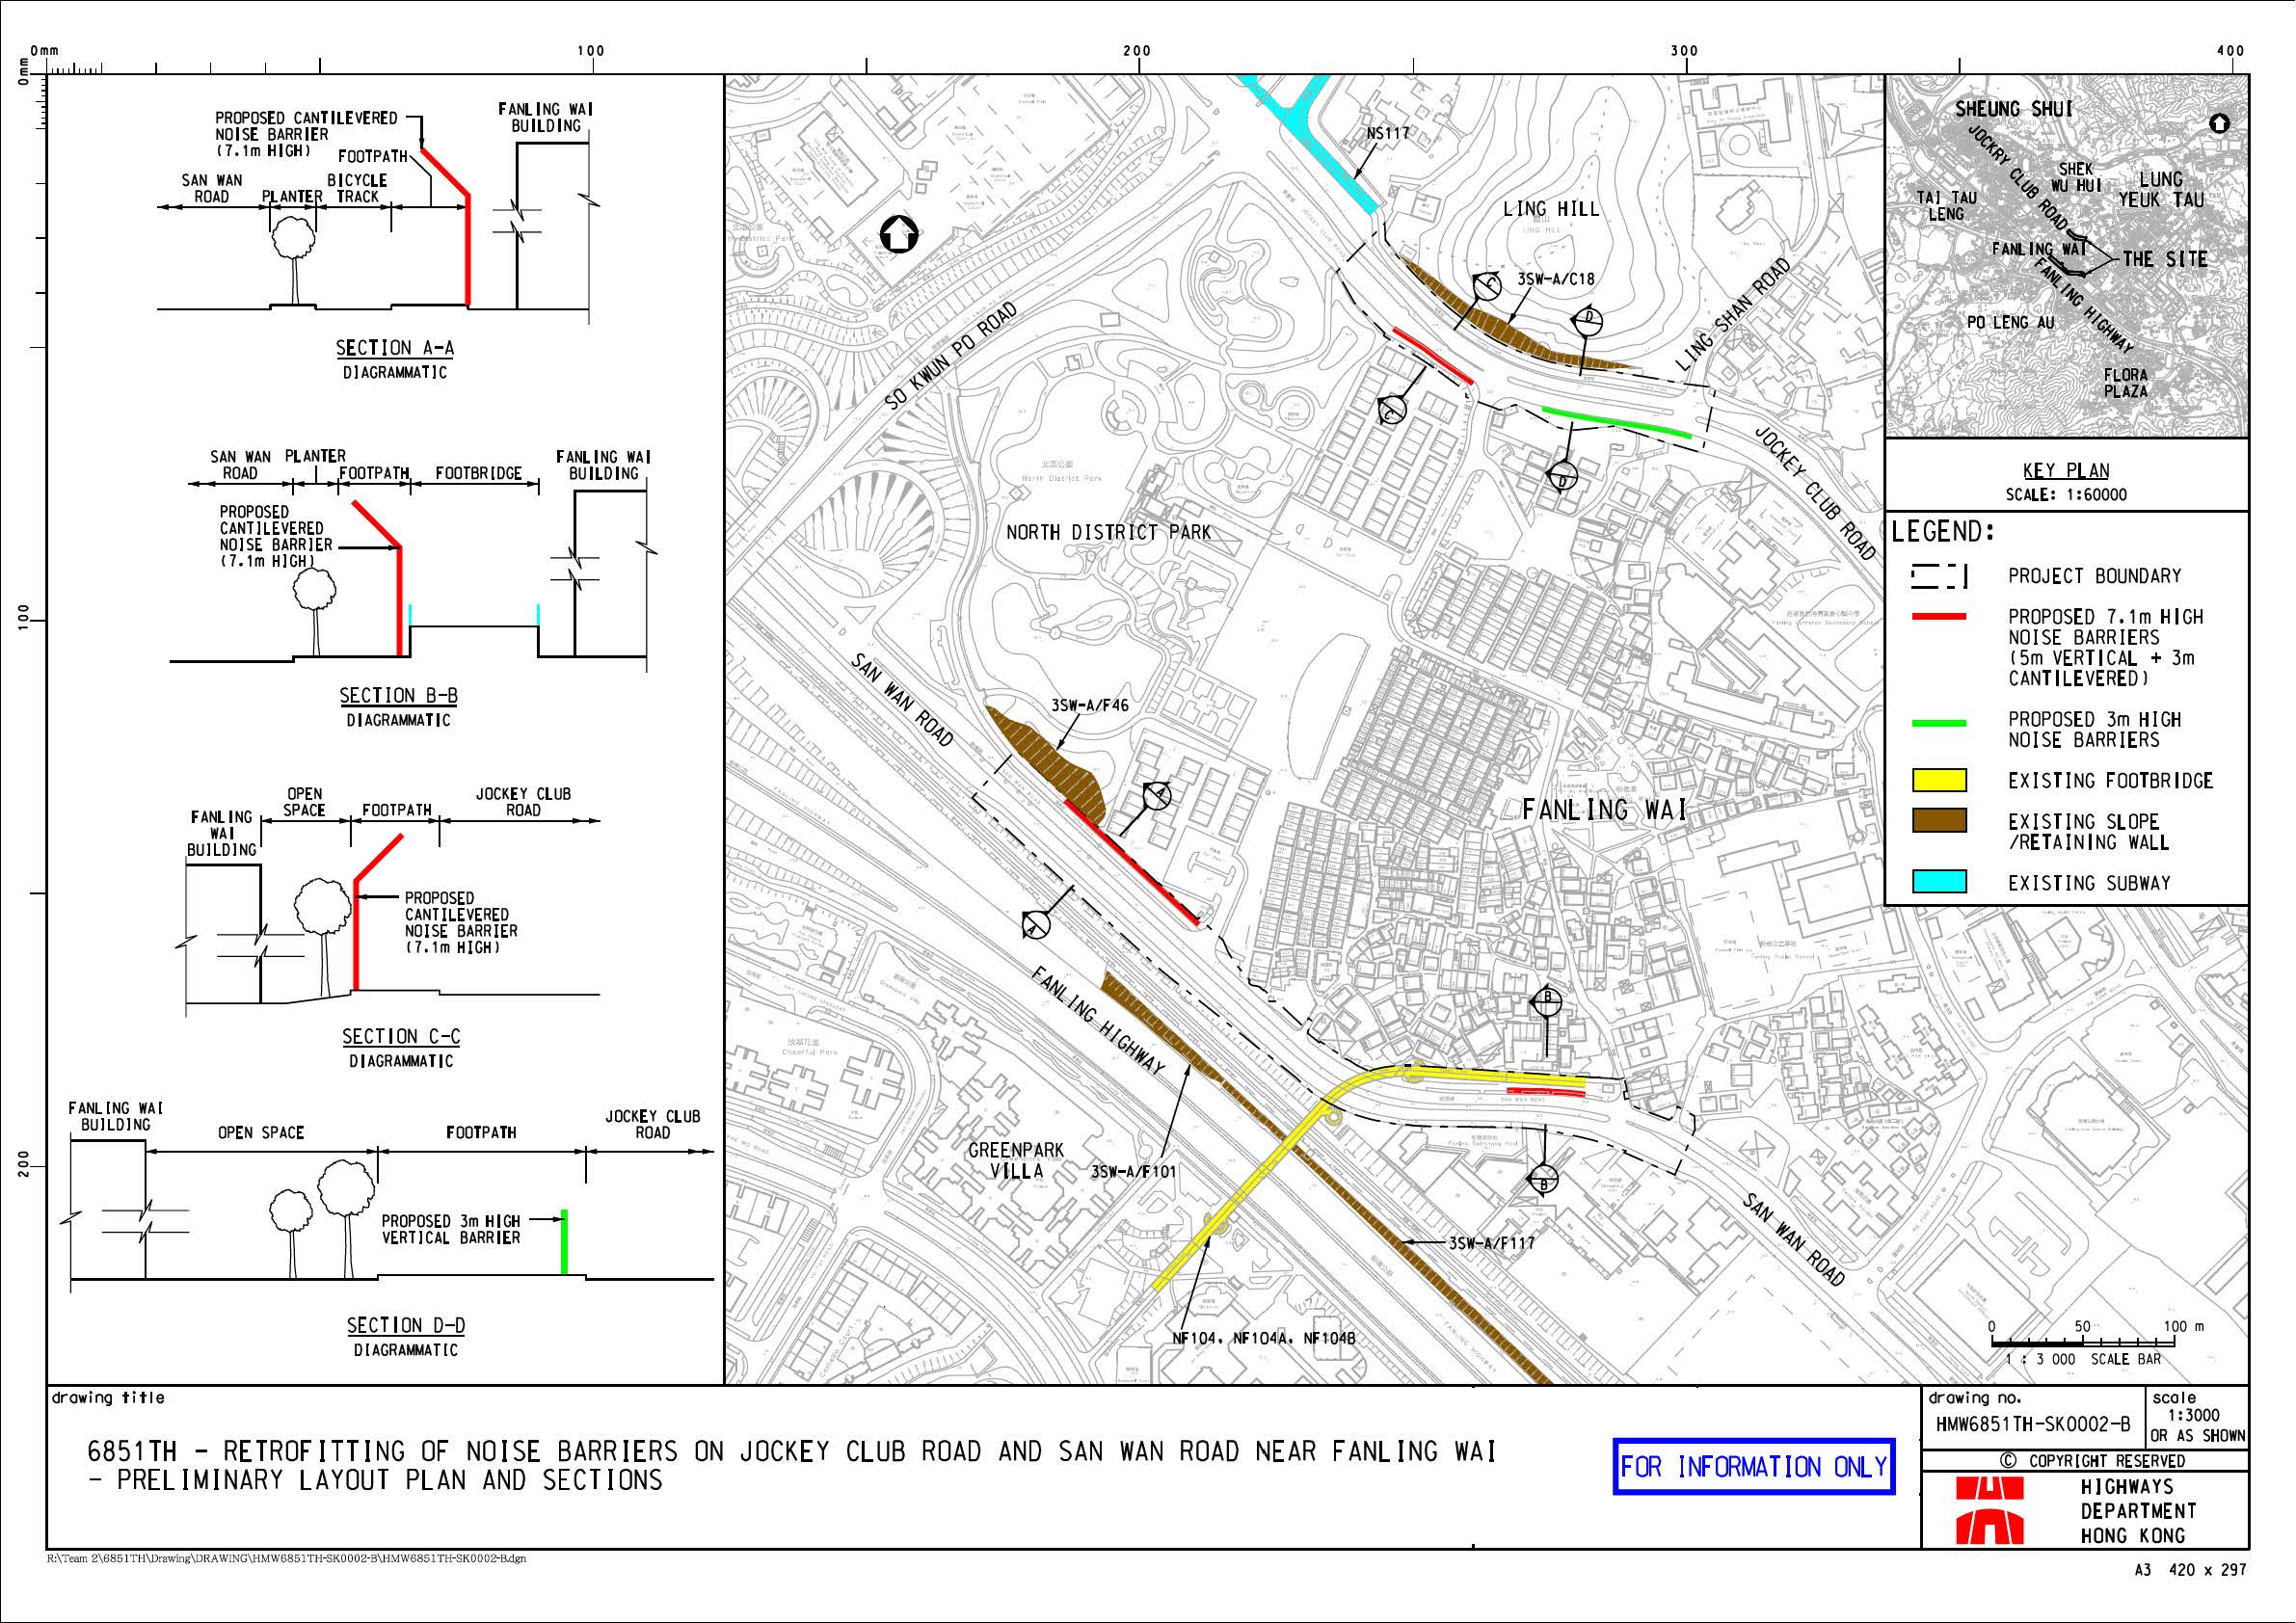 马会道和新运路(近粉岭围)加建隔音屏障工程 – 平面图